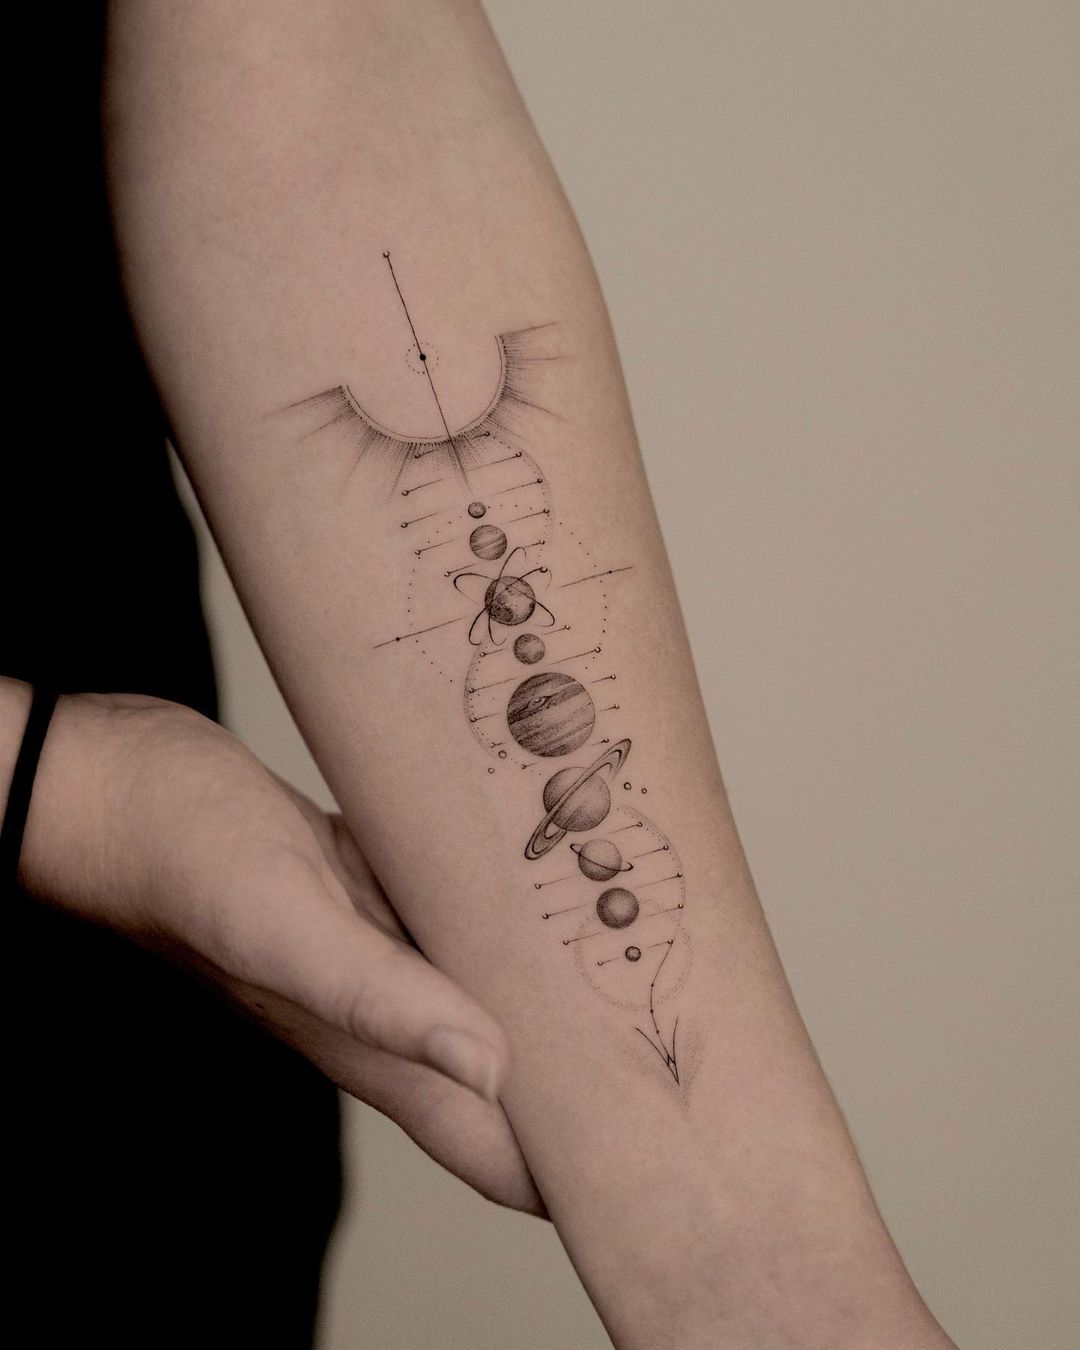 Solar system tattoo design by jk.tattoo